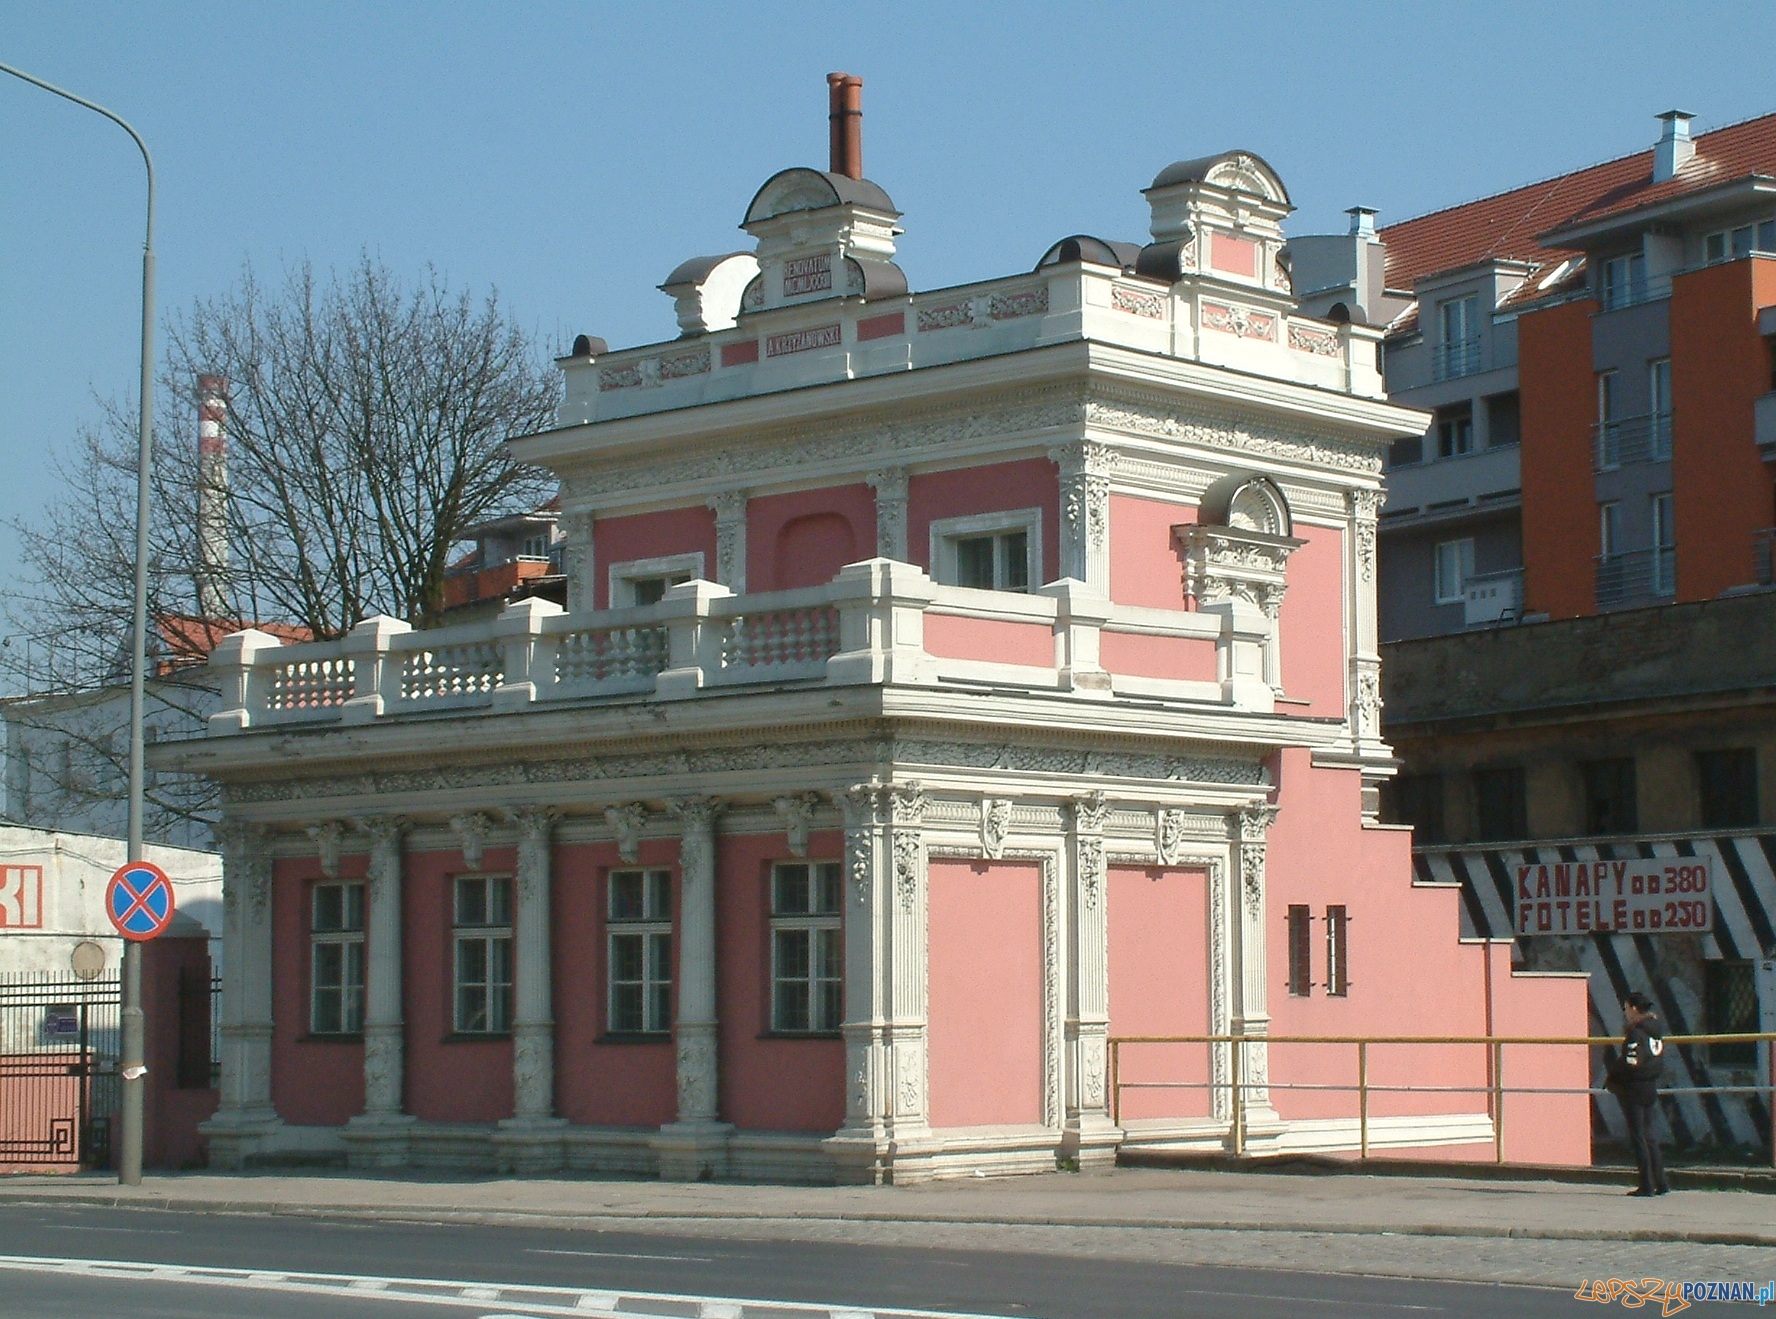 Kantor Krzyżanowskiego